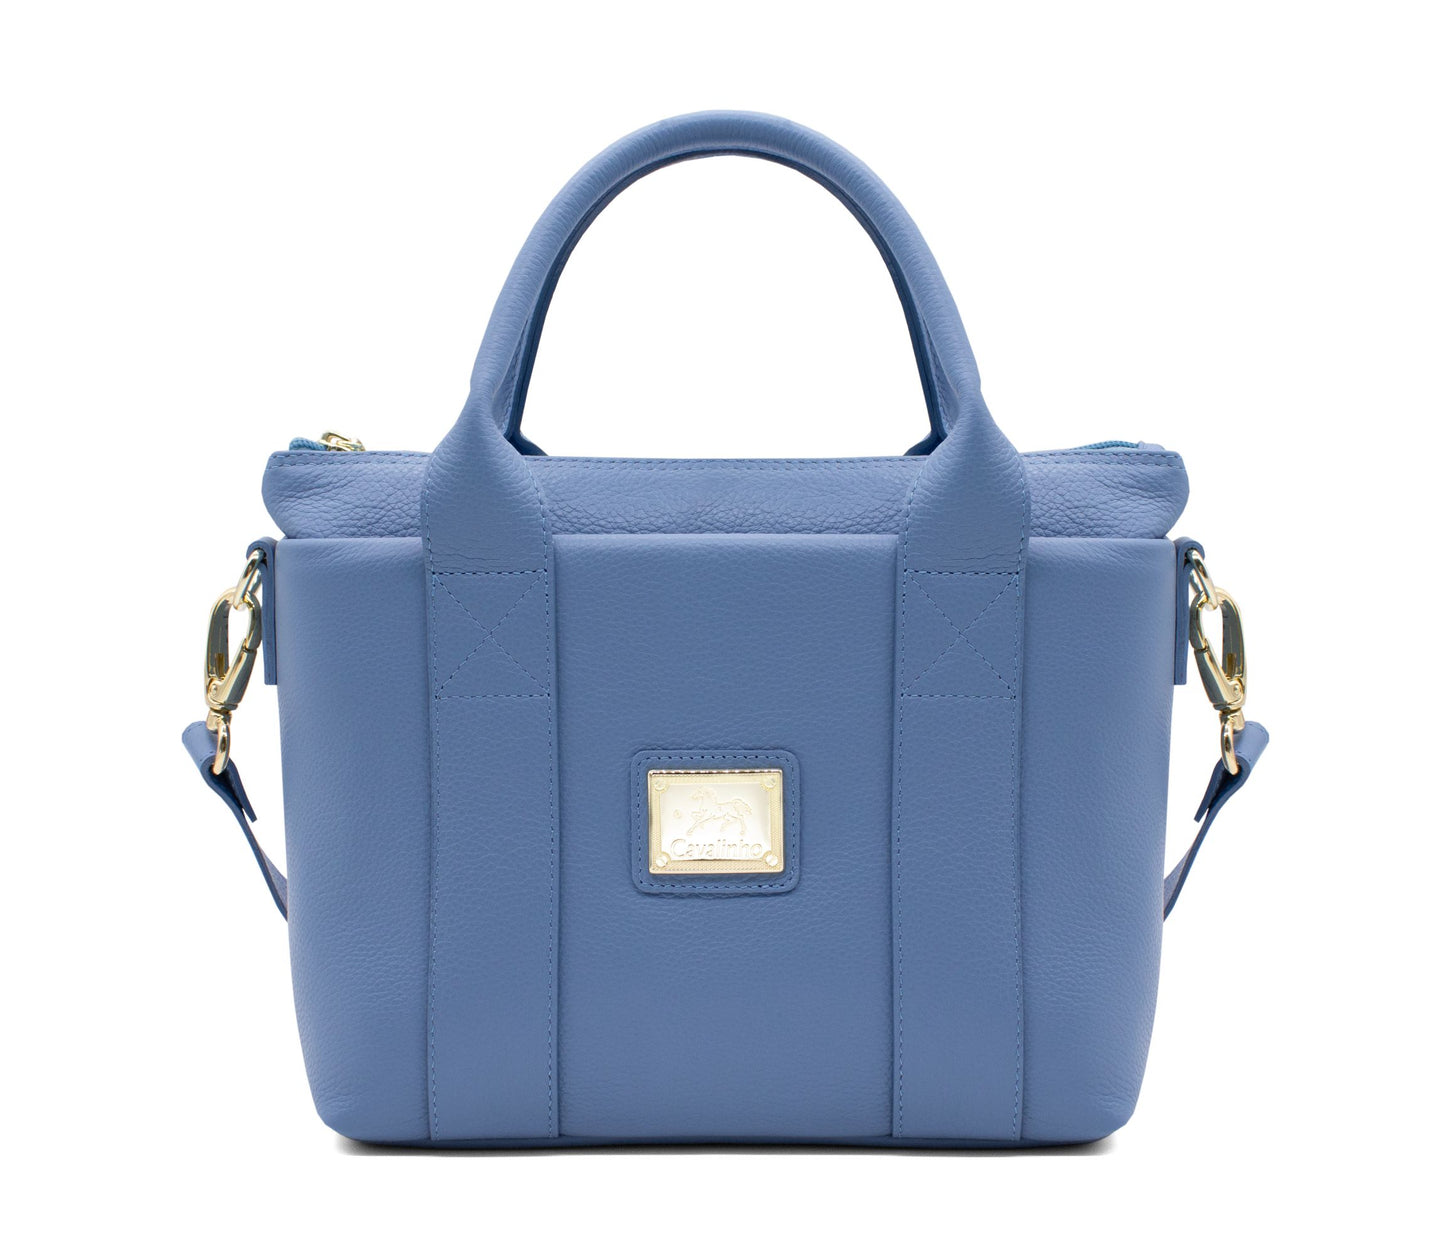 #color_ CornflowerBlue | Cavalinho Muse Leather Handbag - CornflowerBlue - 18300486.10_1